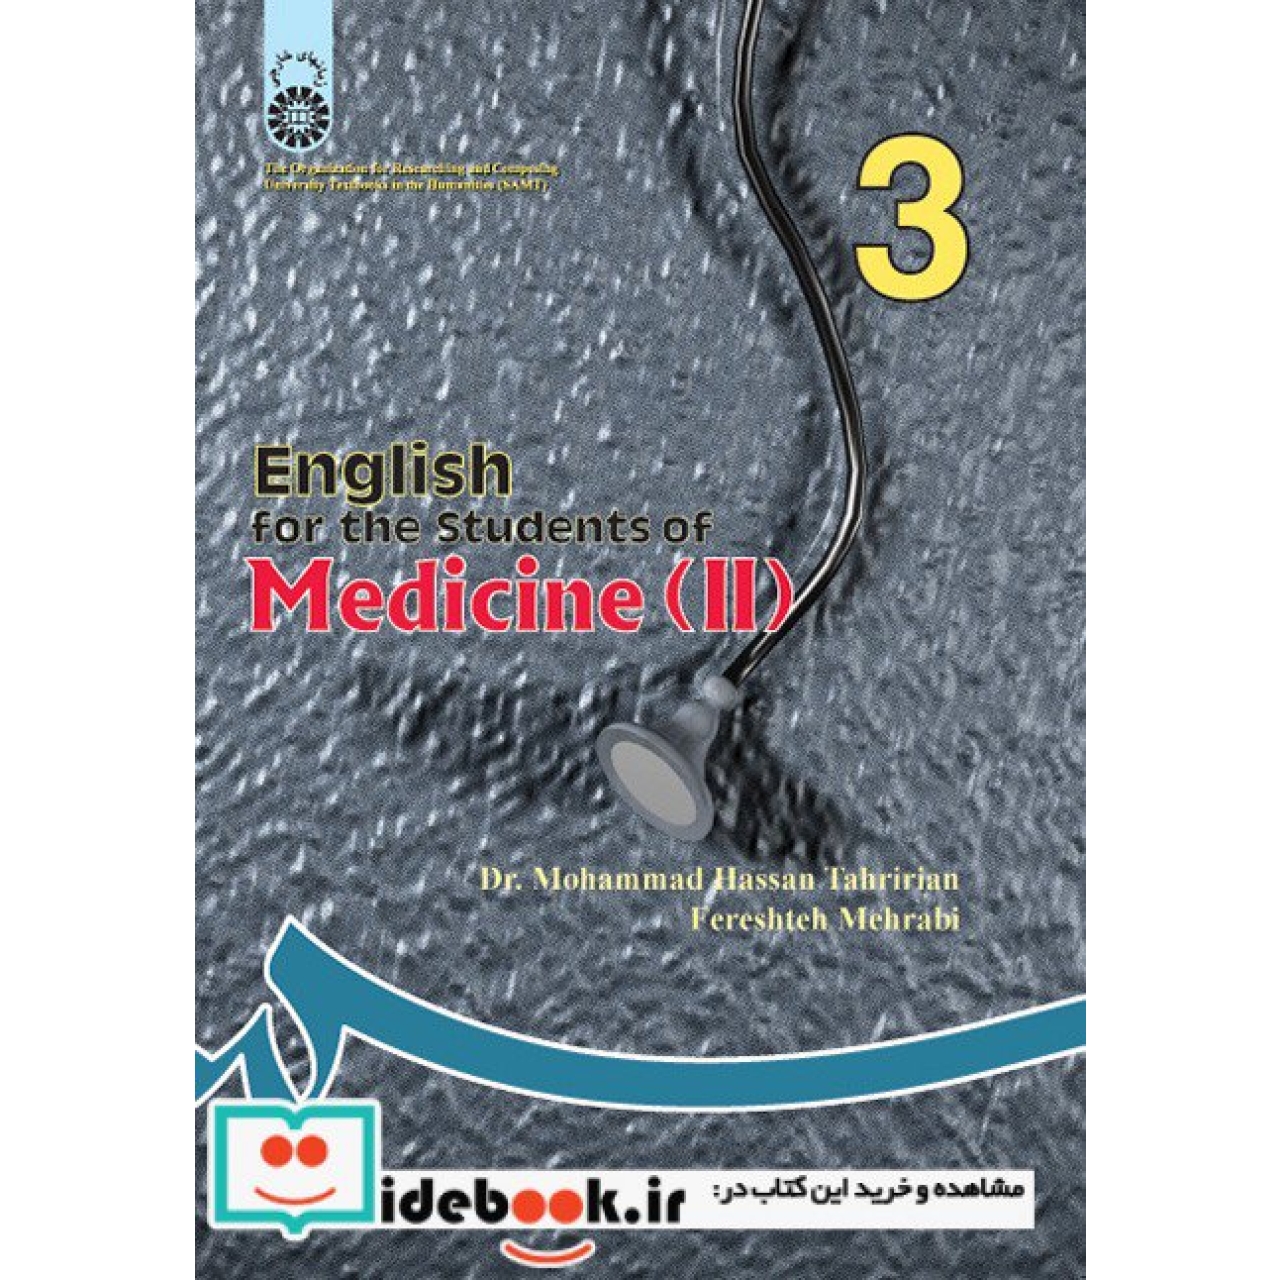 انگلیسی برای دانشجویان رشته پزشکی (2)